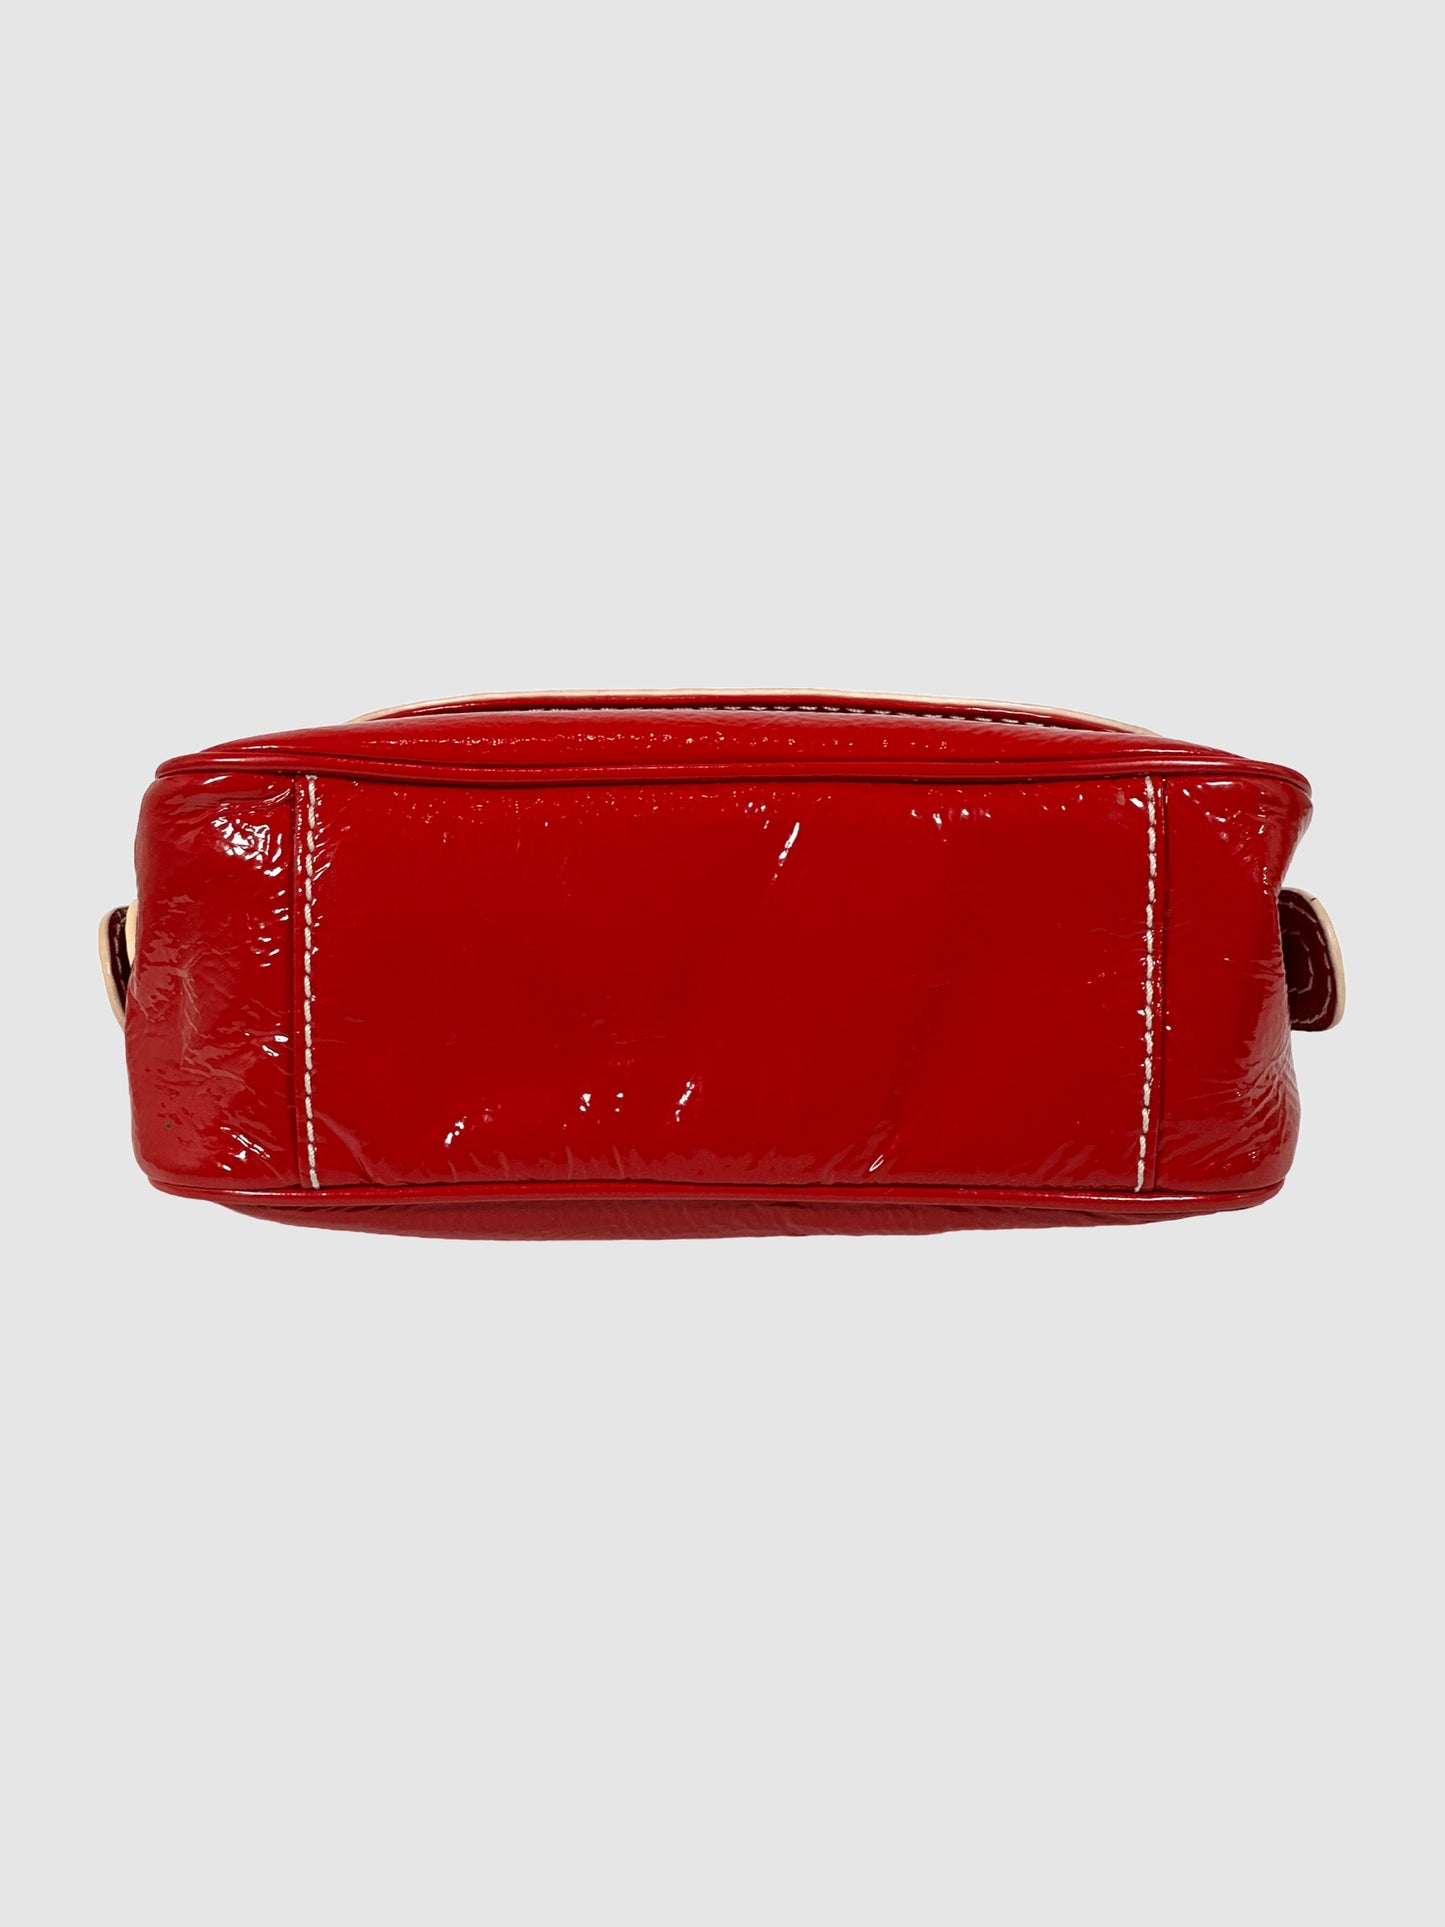 Badgley Mischka Patent Leather Flap Shoulder Bag